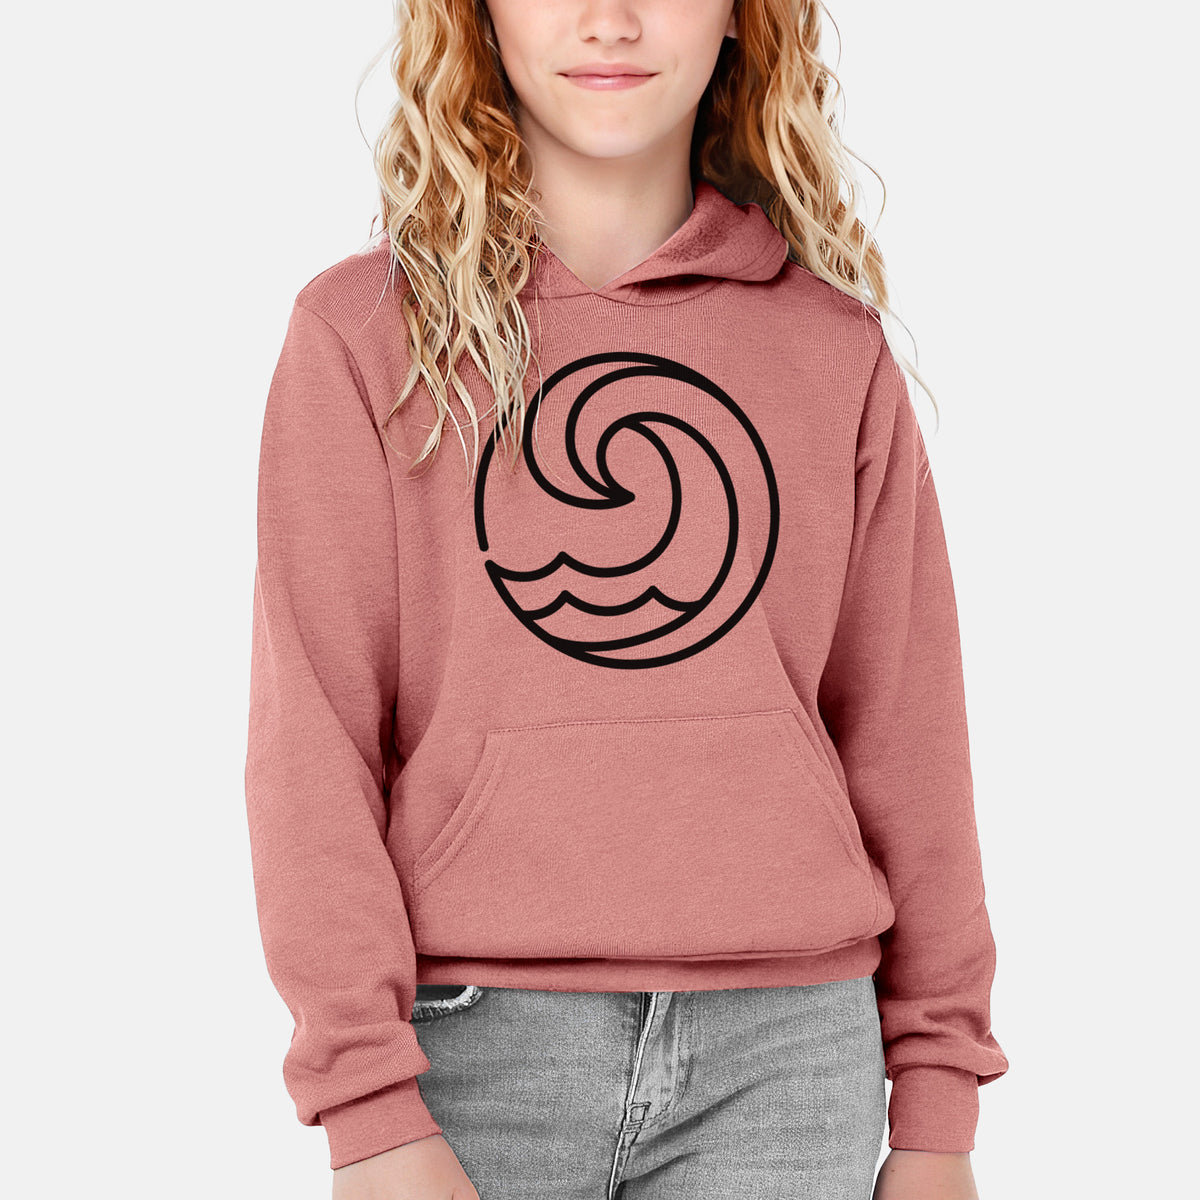 Tidal Wave Circle - Youth Hoodie Sweatshirt